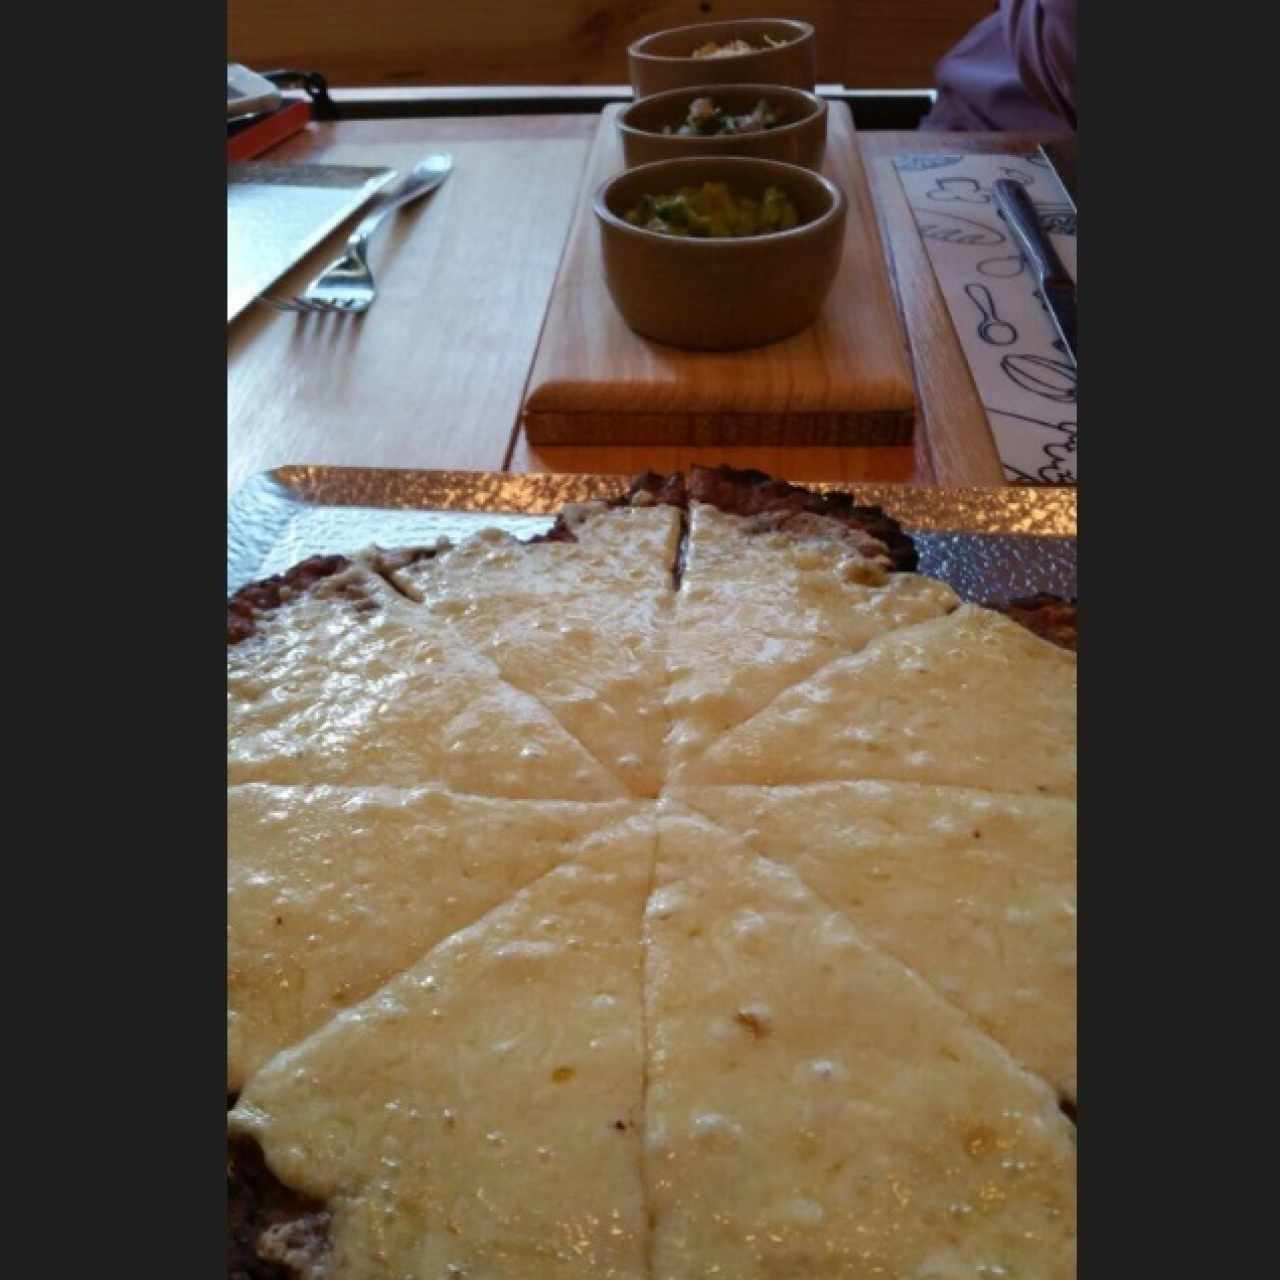 Pizza de Platano con guacamole, pico de gallo y queso rallado para untarlo con la pizza